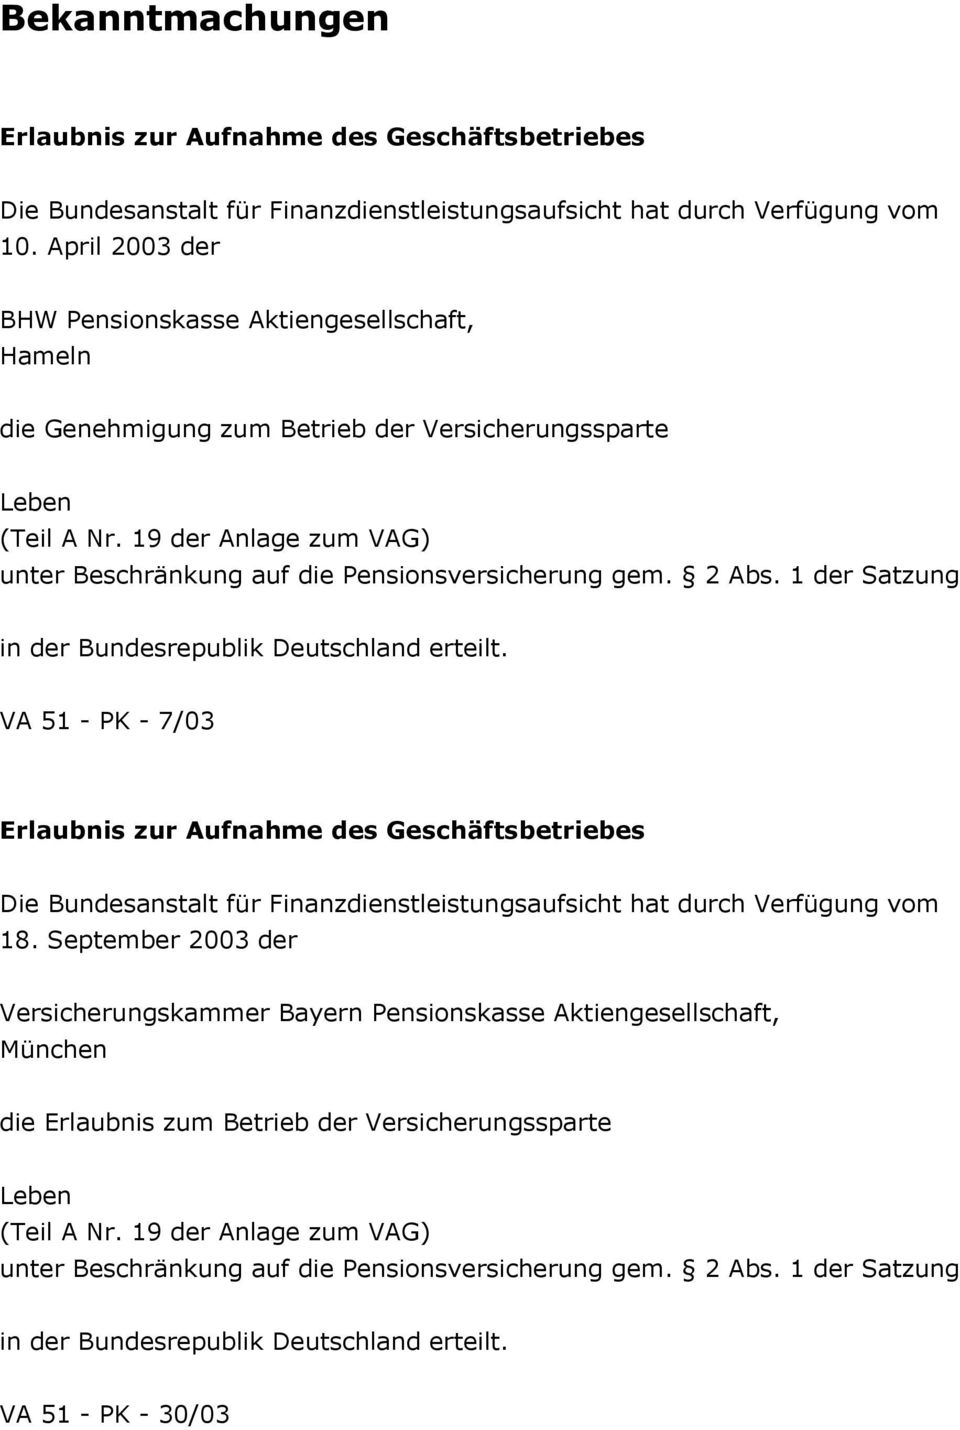 19 der Anlage zum VAG) unter Beschränkung auf die Pensionsversicherung gem. 2 Abs. 1 der Satzung in der Bundesrepublik Deutschland erteilt.